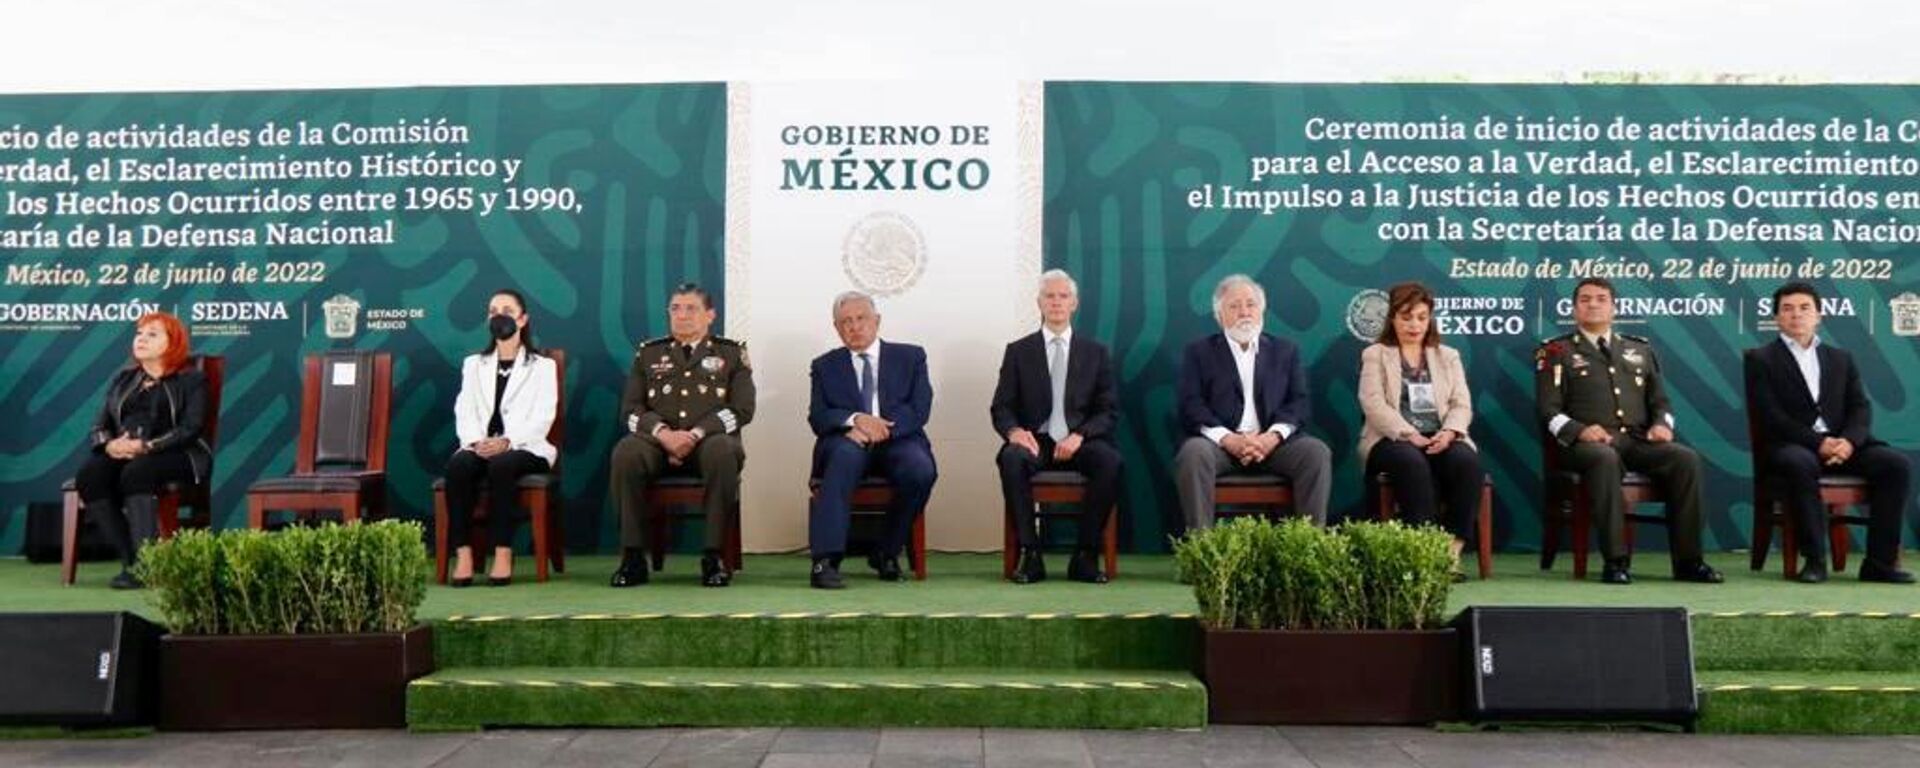 Ceremonia del inicio de actividades de la Comisión de Acceso a la Verdad y Justicia de México - Sputnik Mundo, 1920, 22.06.2022